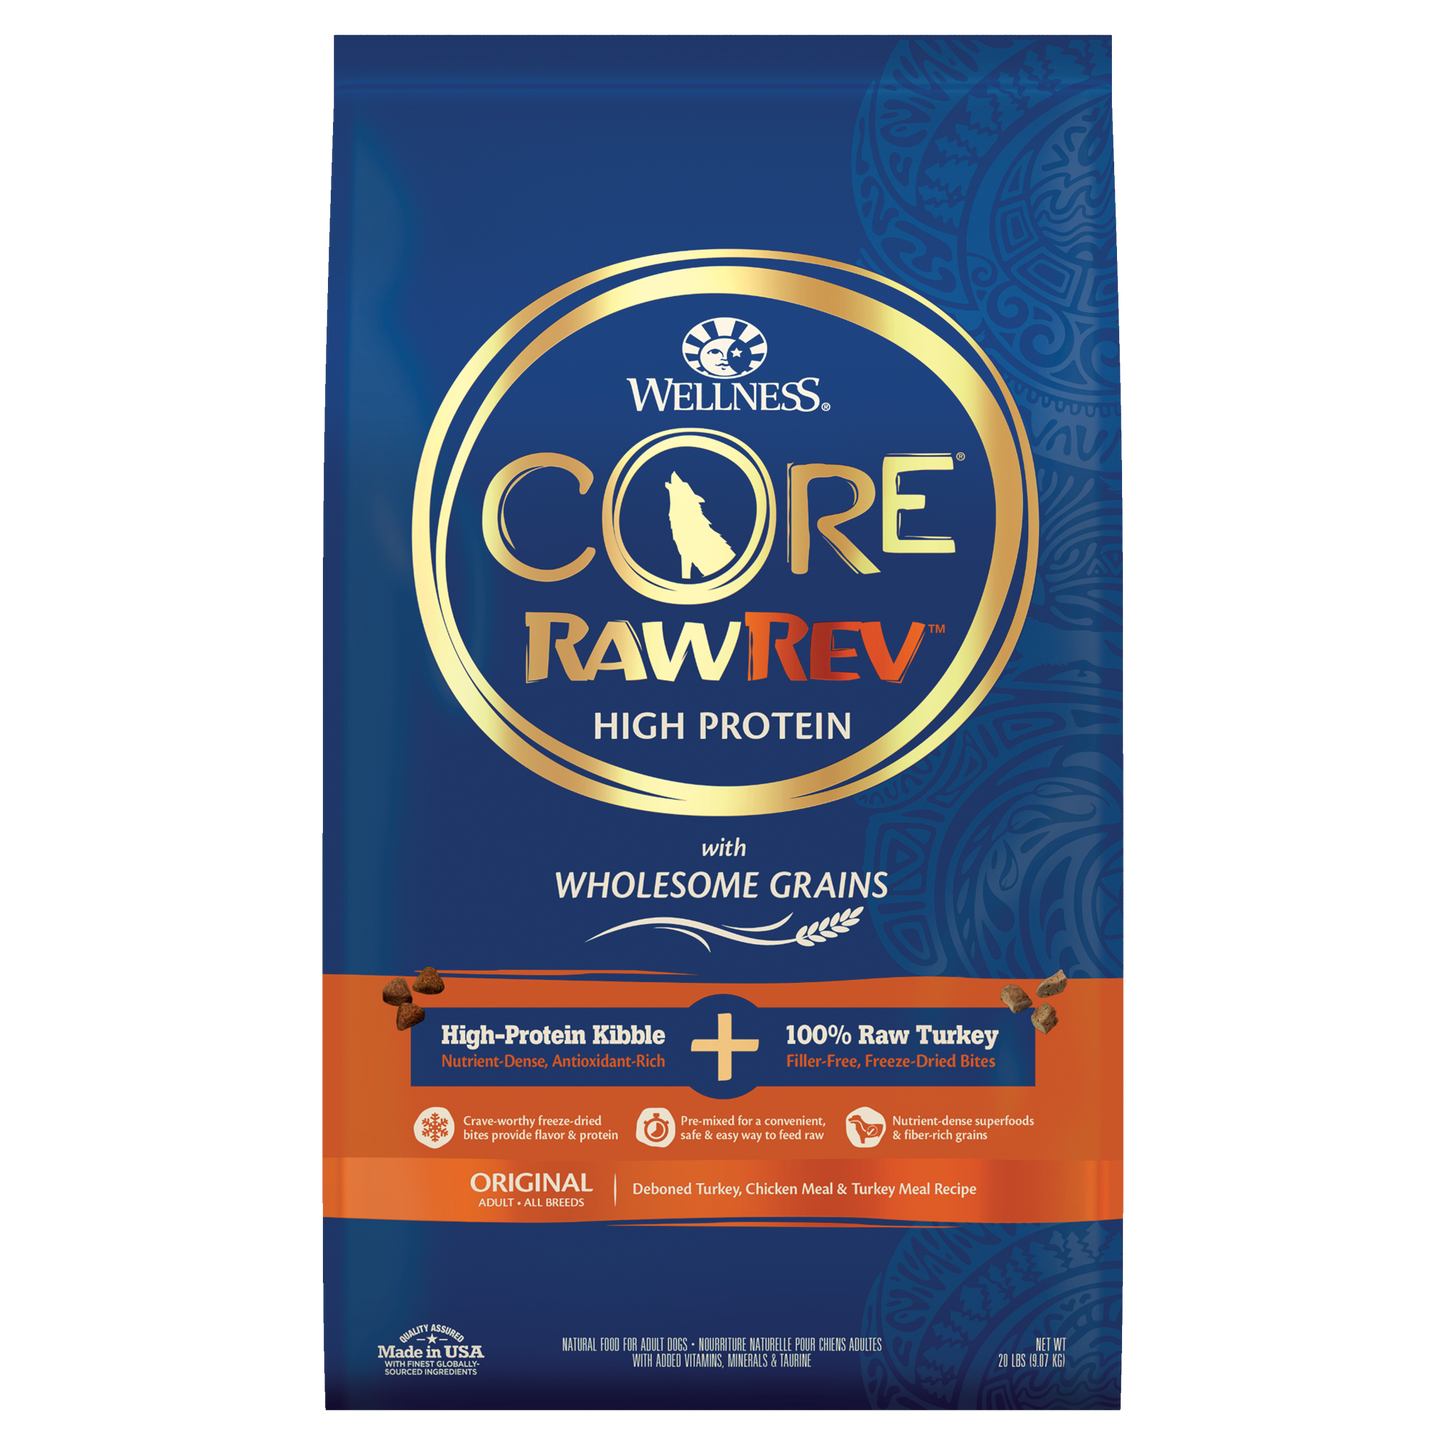 Wellness CORE RawRev Wholesome Grains Original Recipe 20lb Bag